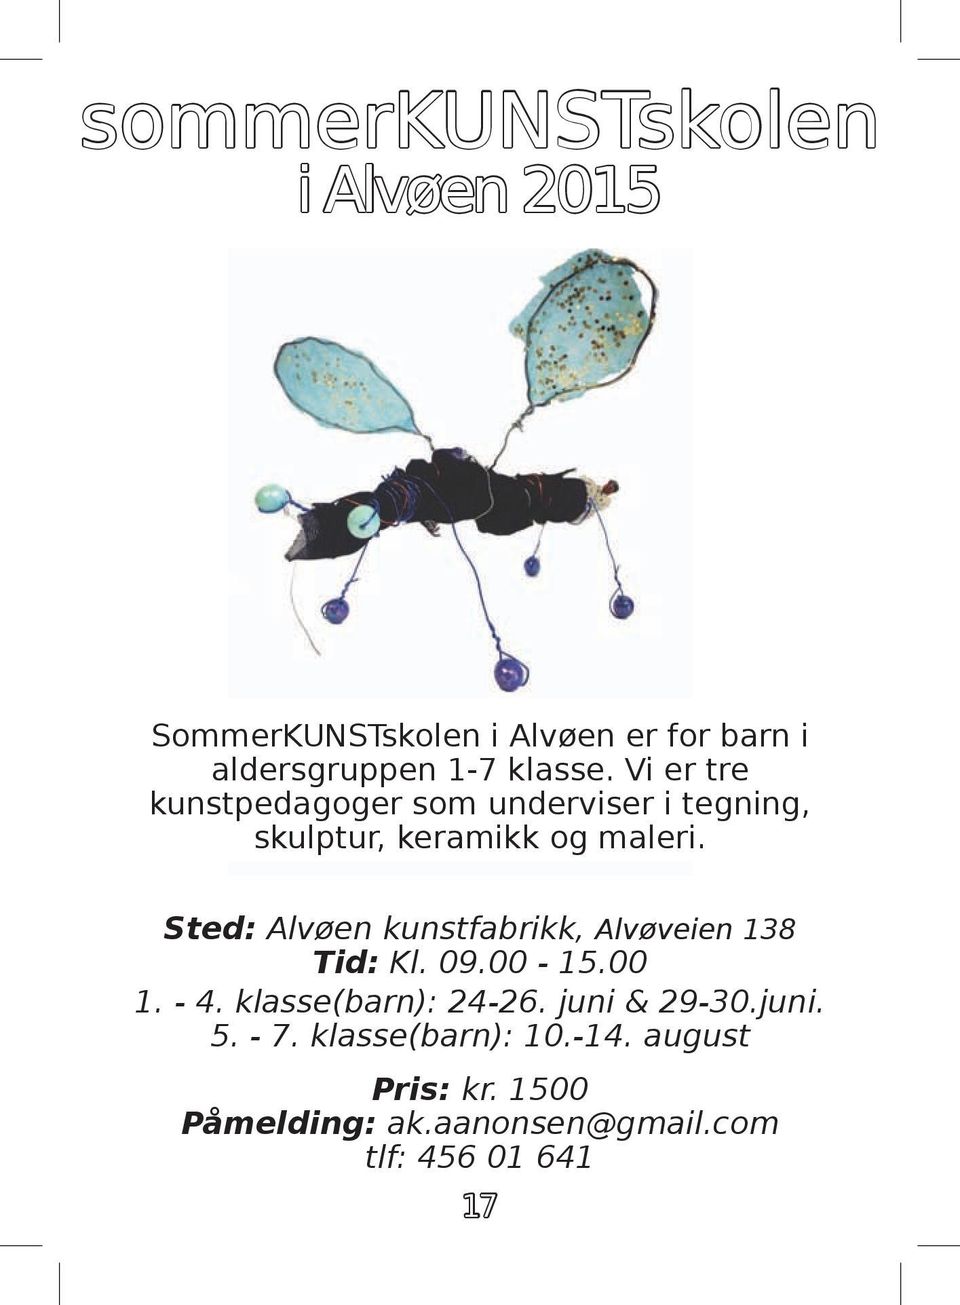 Sted: Alvøen kunstfabrikk, Alvøveien 138 Tid: Kl. 09.00-15.00 1. - 4. klasse(barn): 24-26.